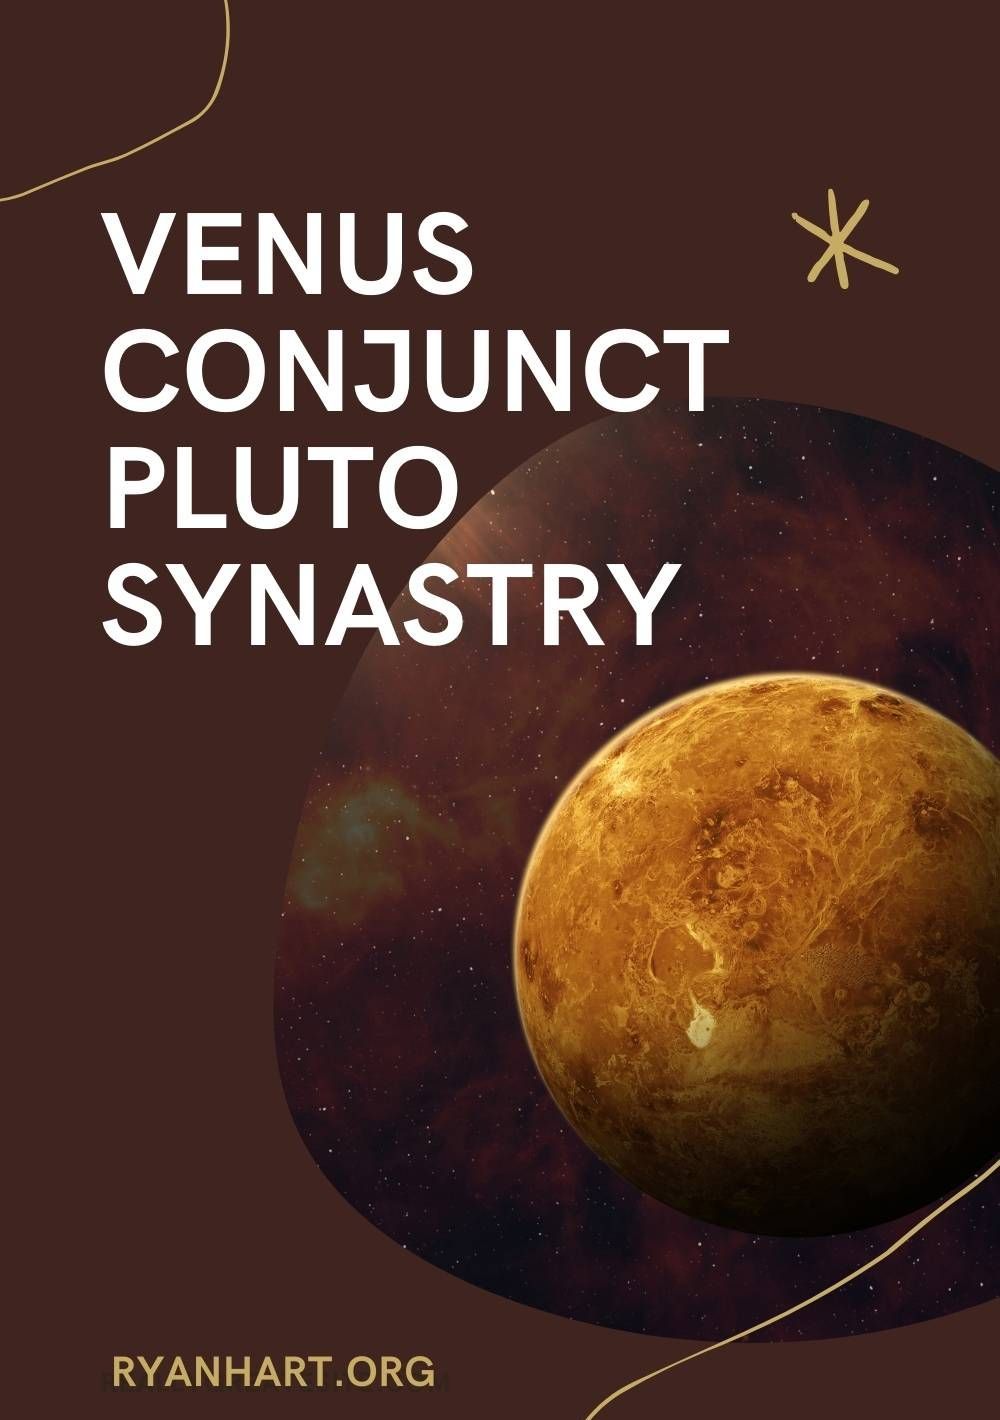 Venuksen yhteys Pluto